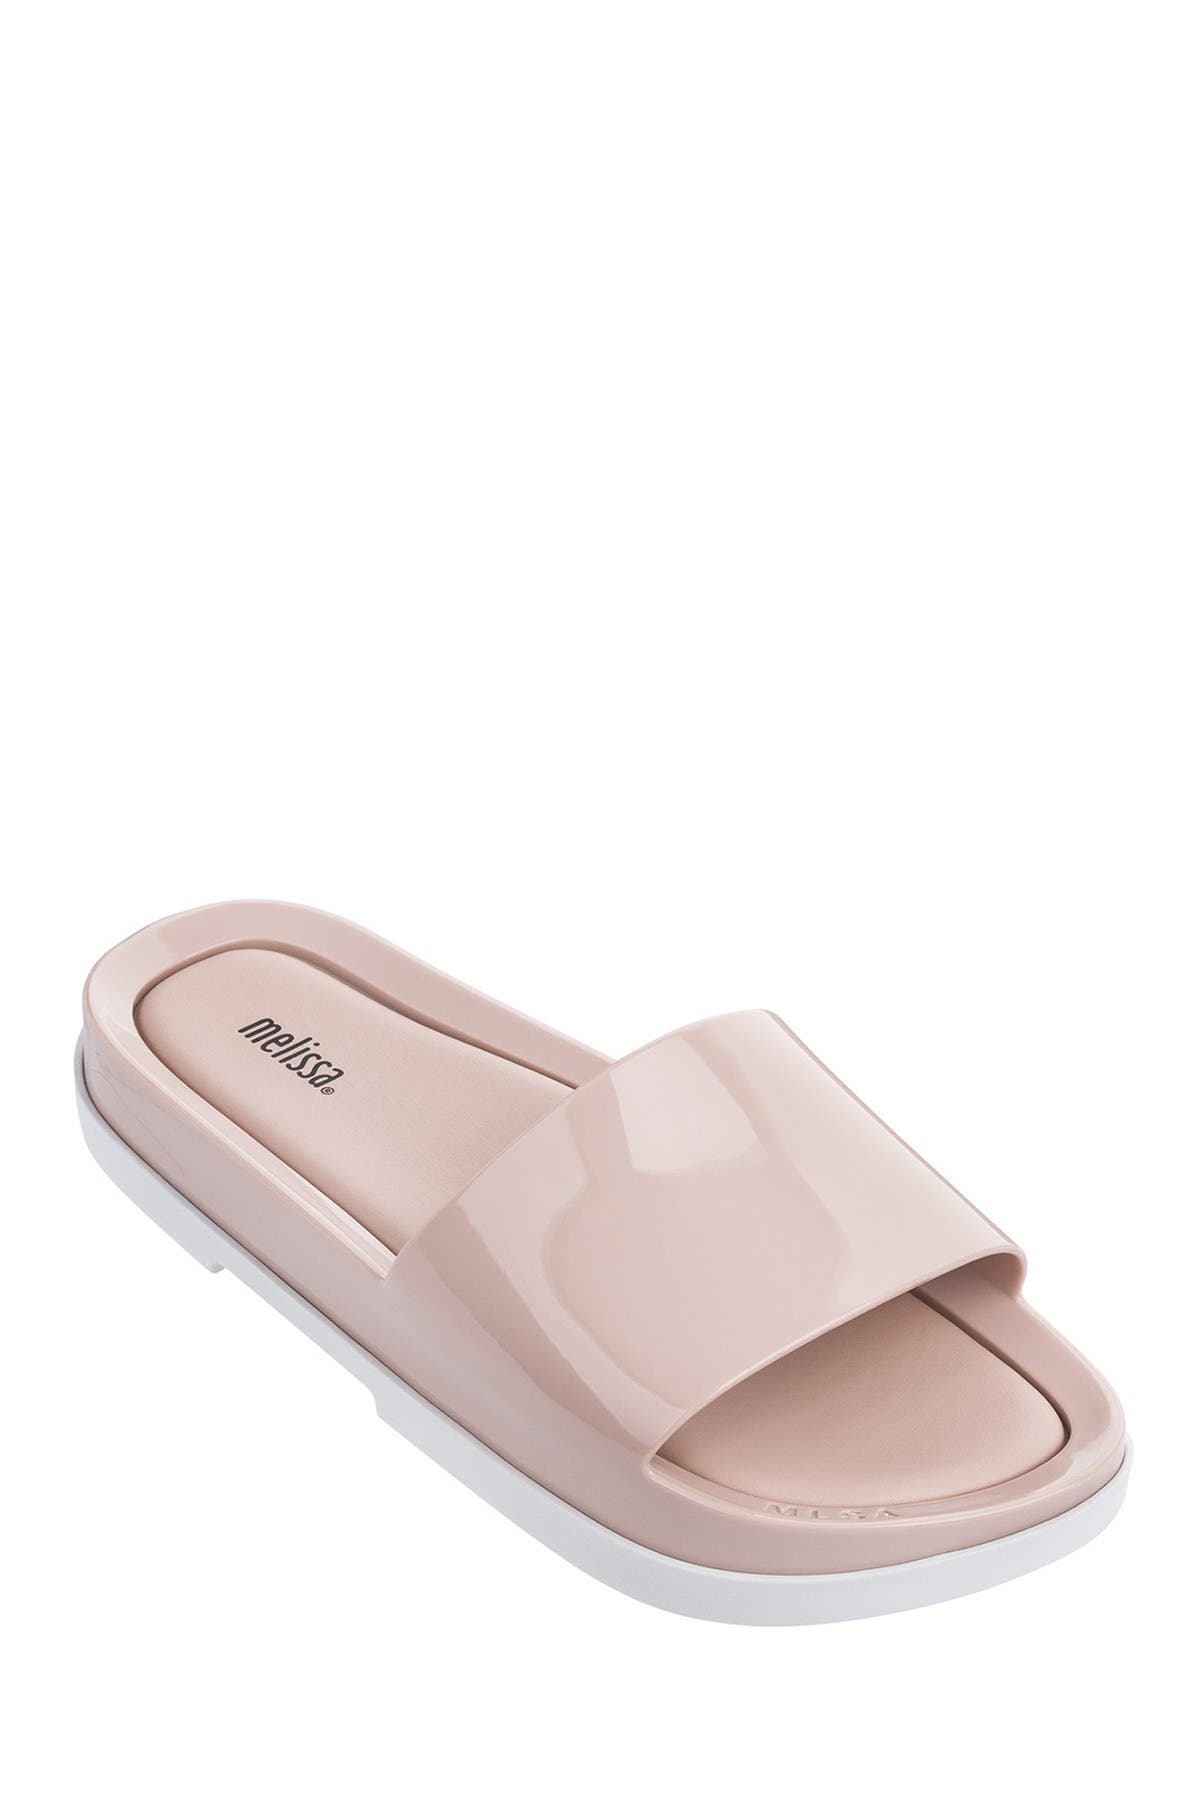 beach slide sandal melissa